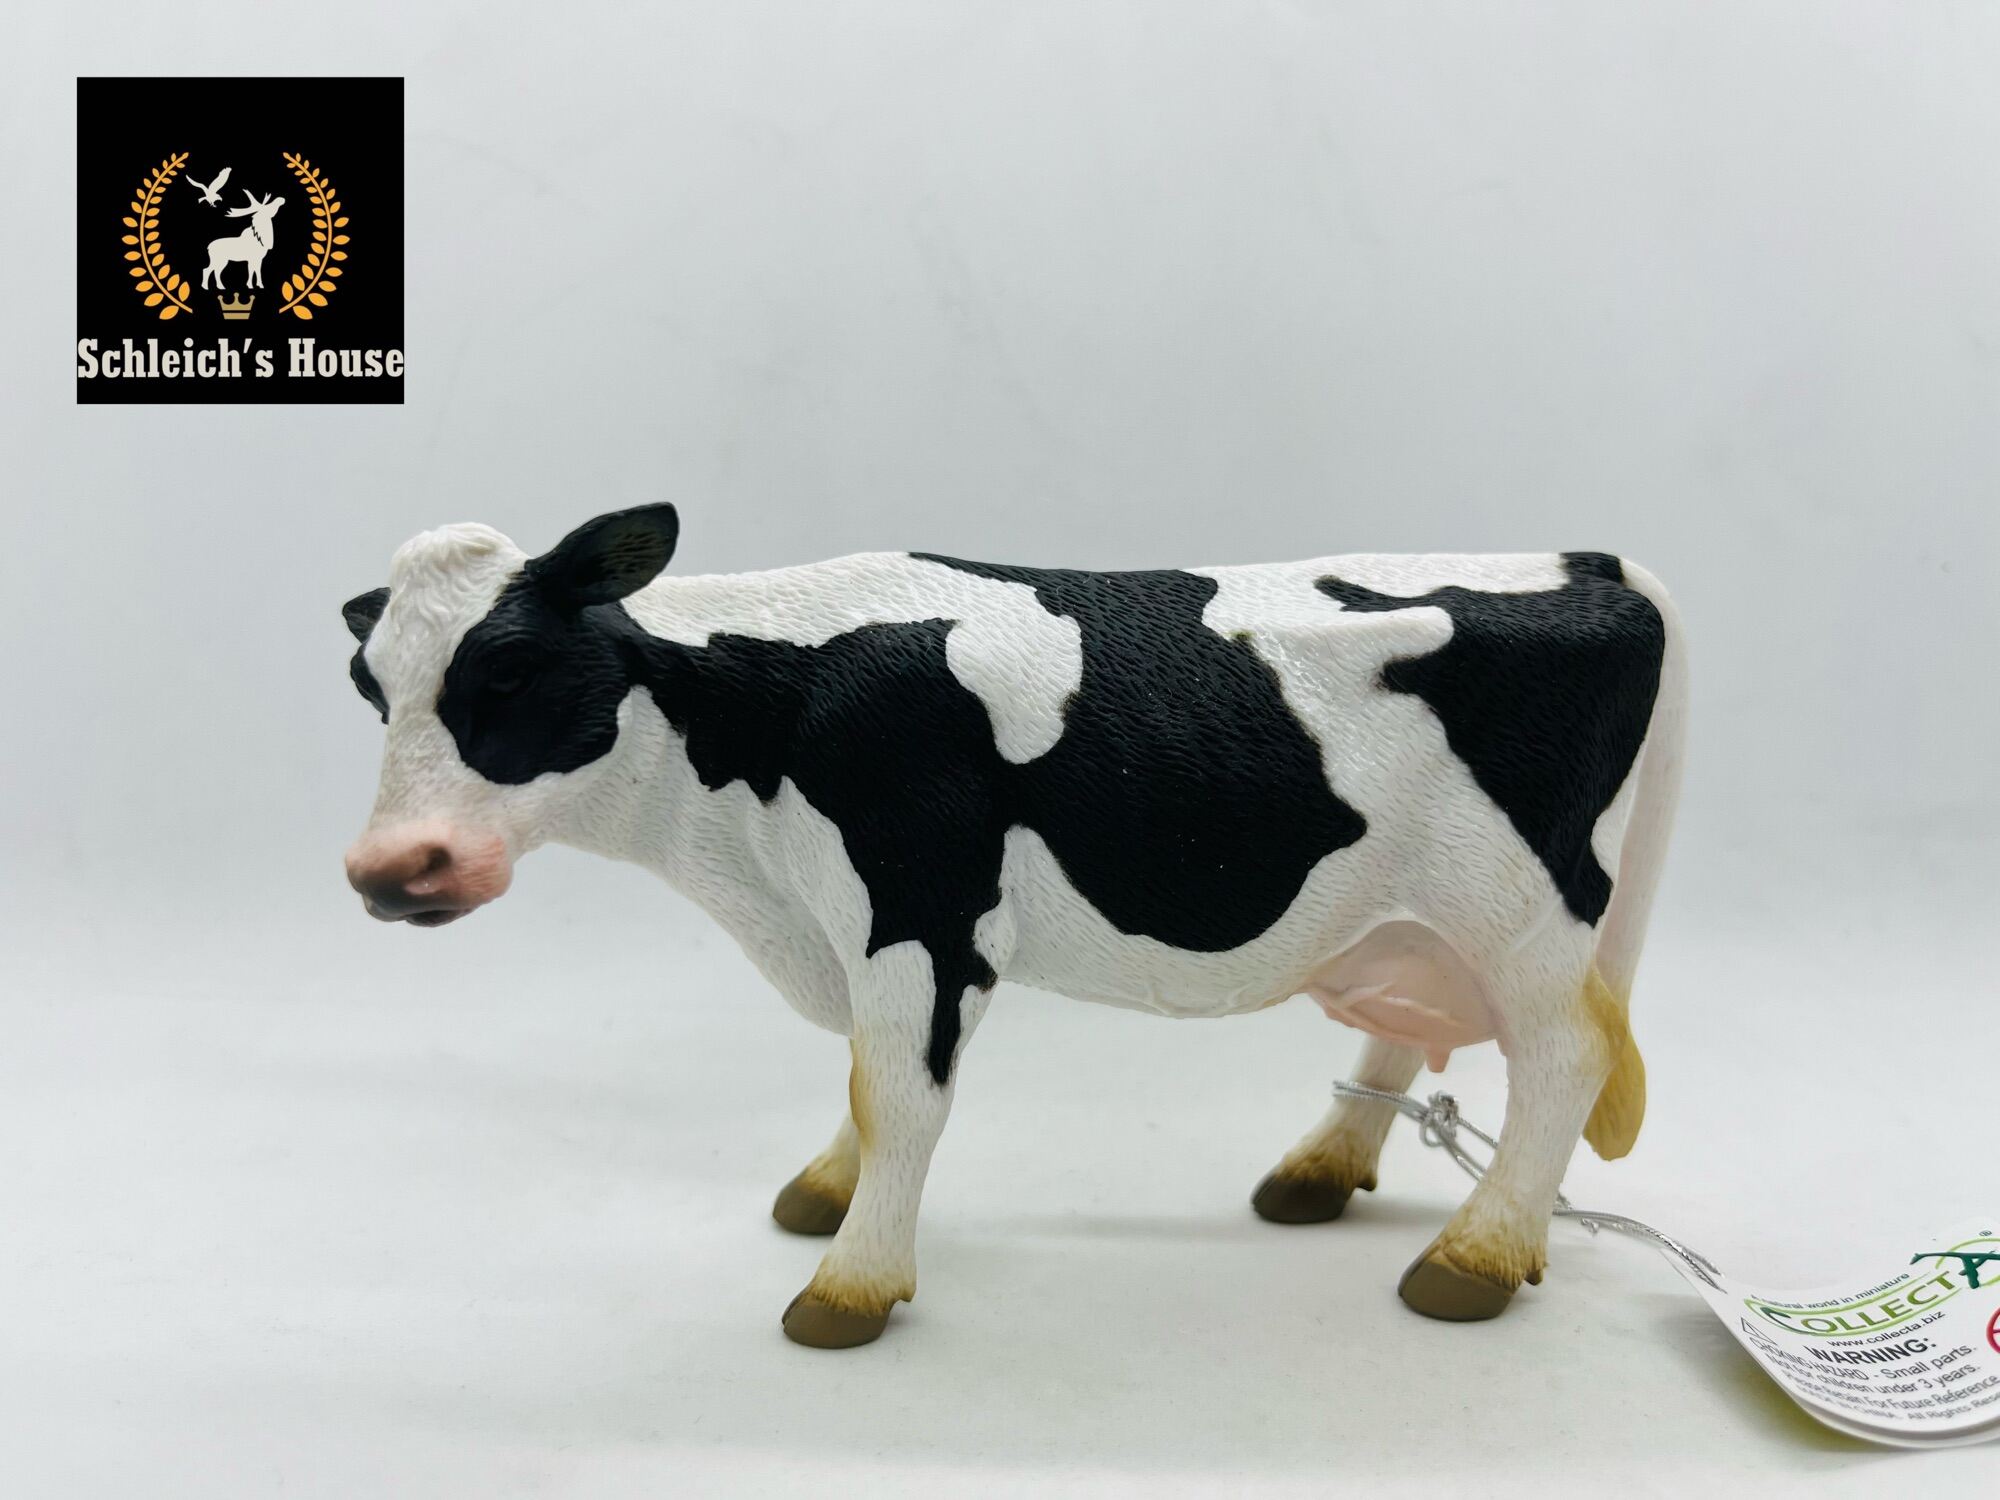 Hiệu quả mô hình nuôi bò sữa  Nông nghiệp Tây Ninh  TayNinhTV  YouTube